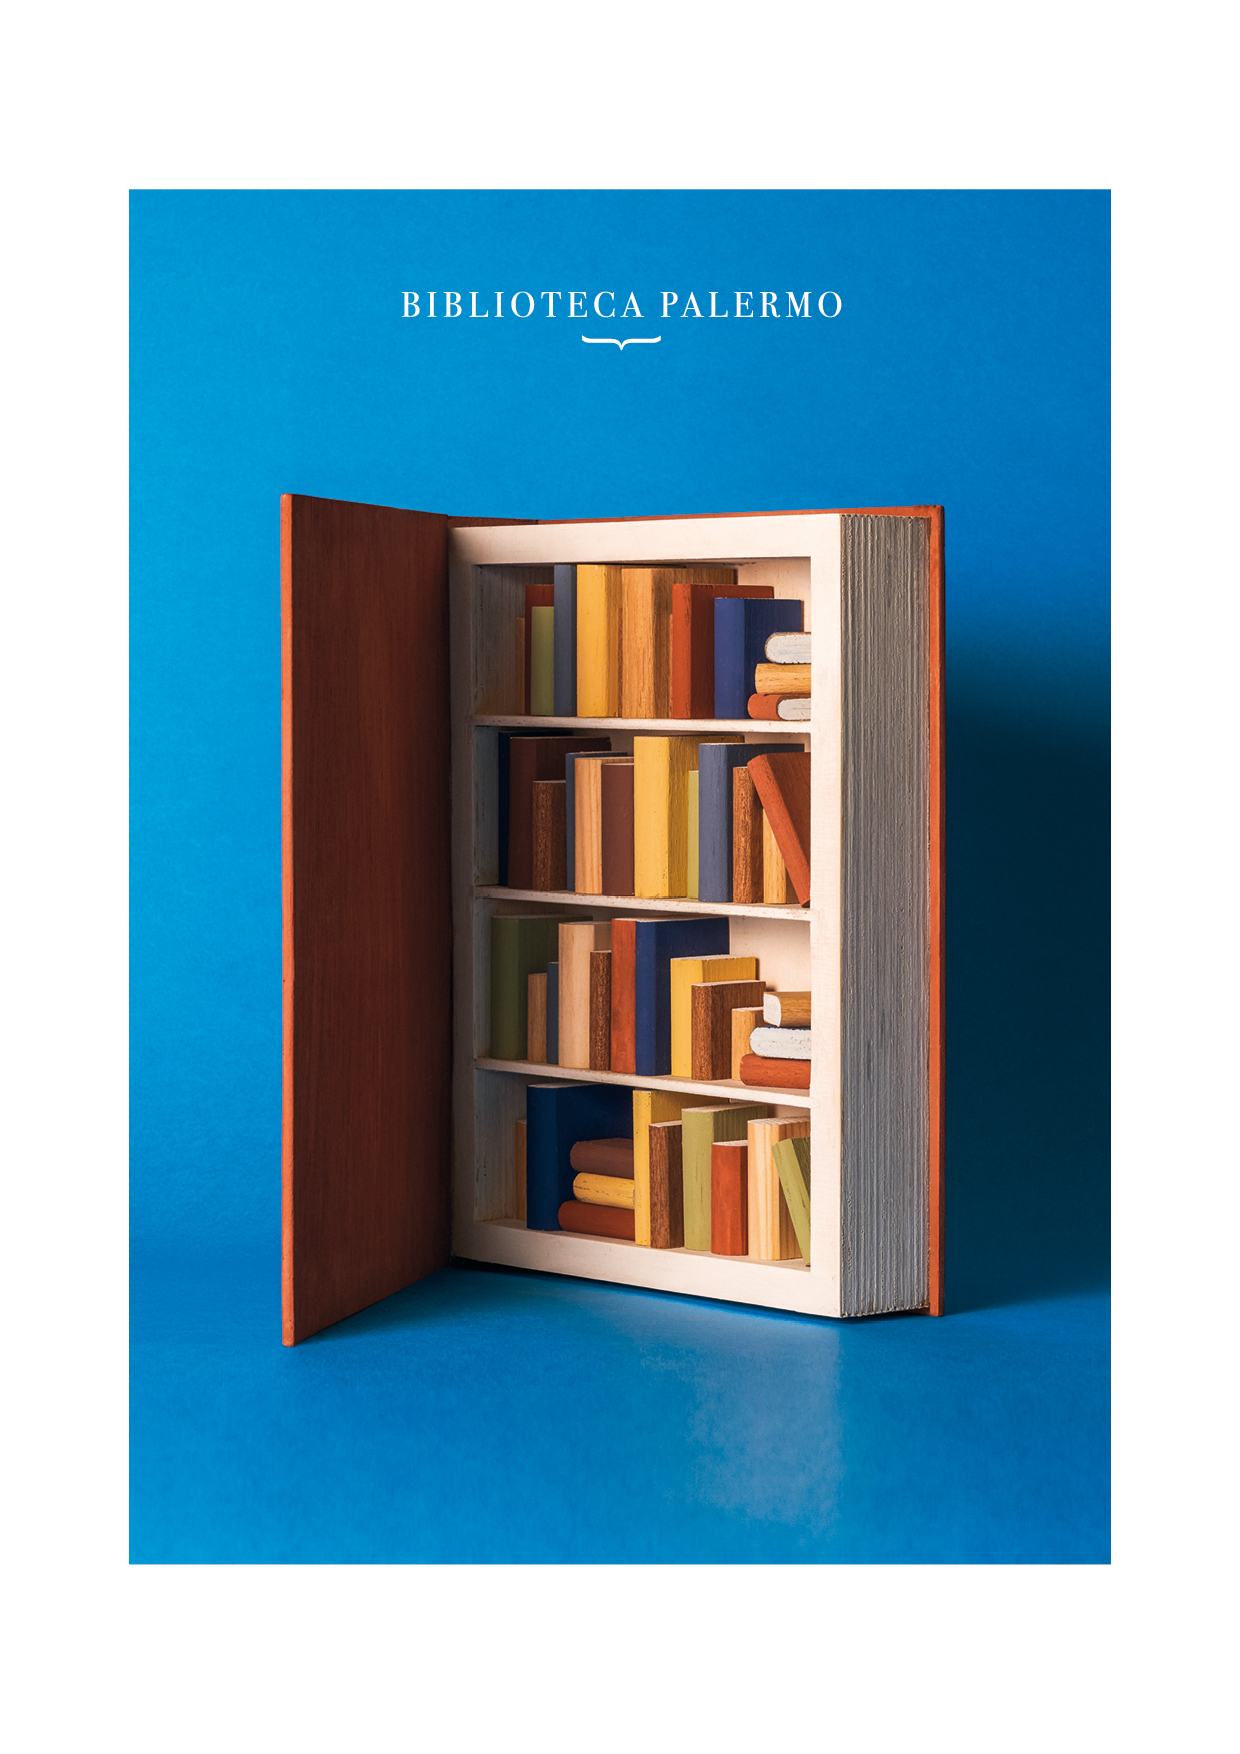 Biblioteca Palermo 'Libro-librería' by Estudio Pep Carrió - Creative Work